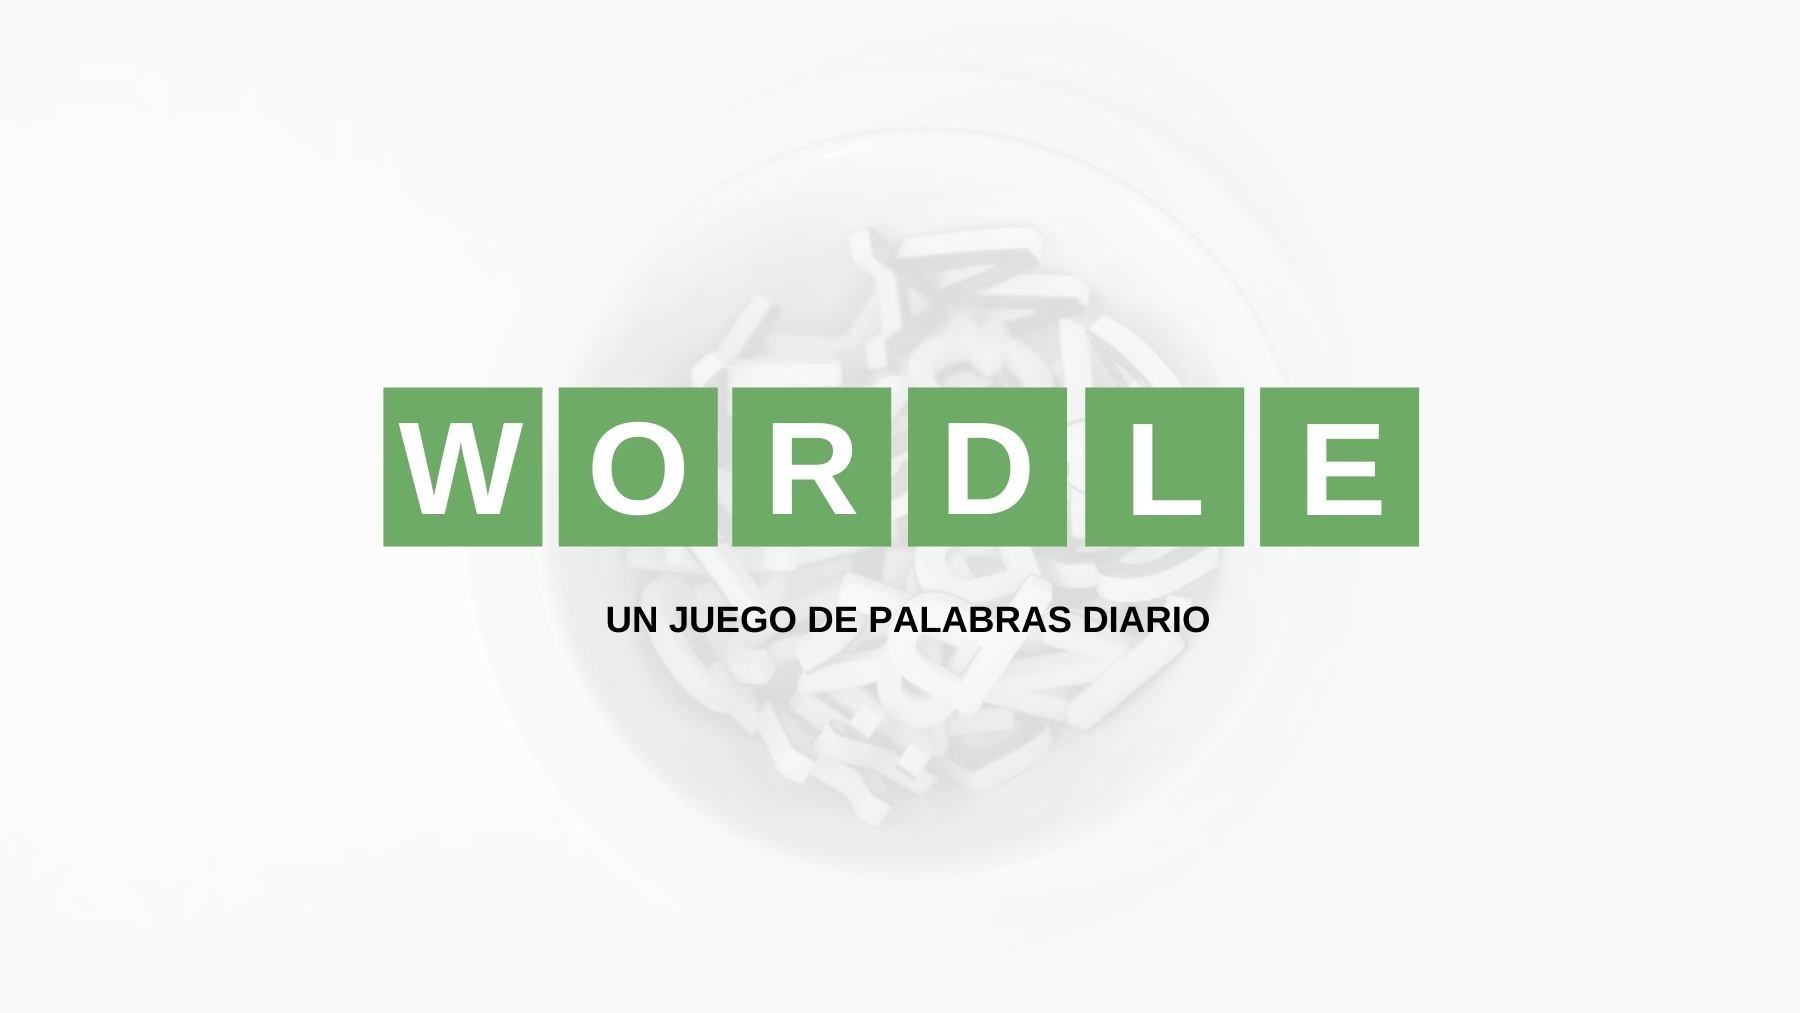 Solución reto Wordle español, científico y con tildes hoy, lunes 8 de agosto de 2022